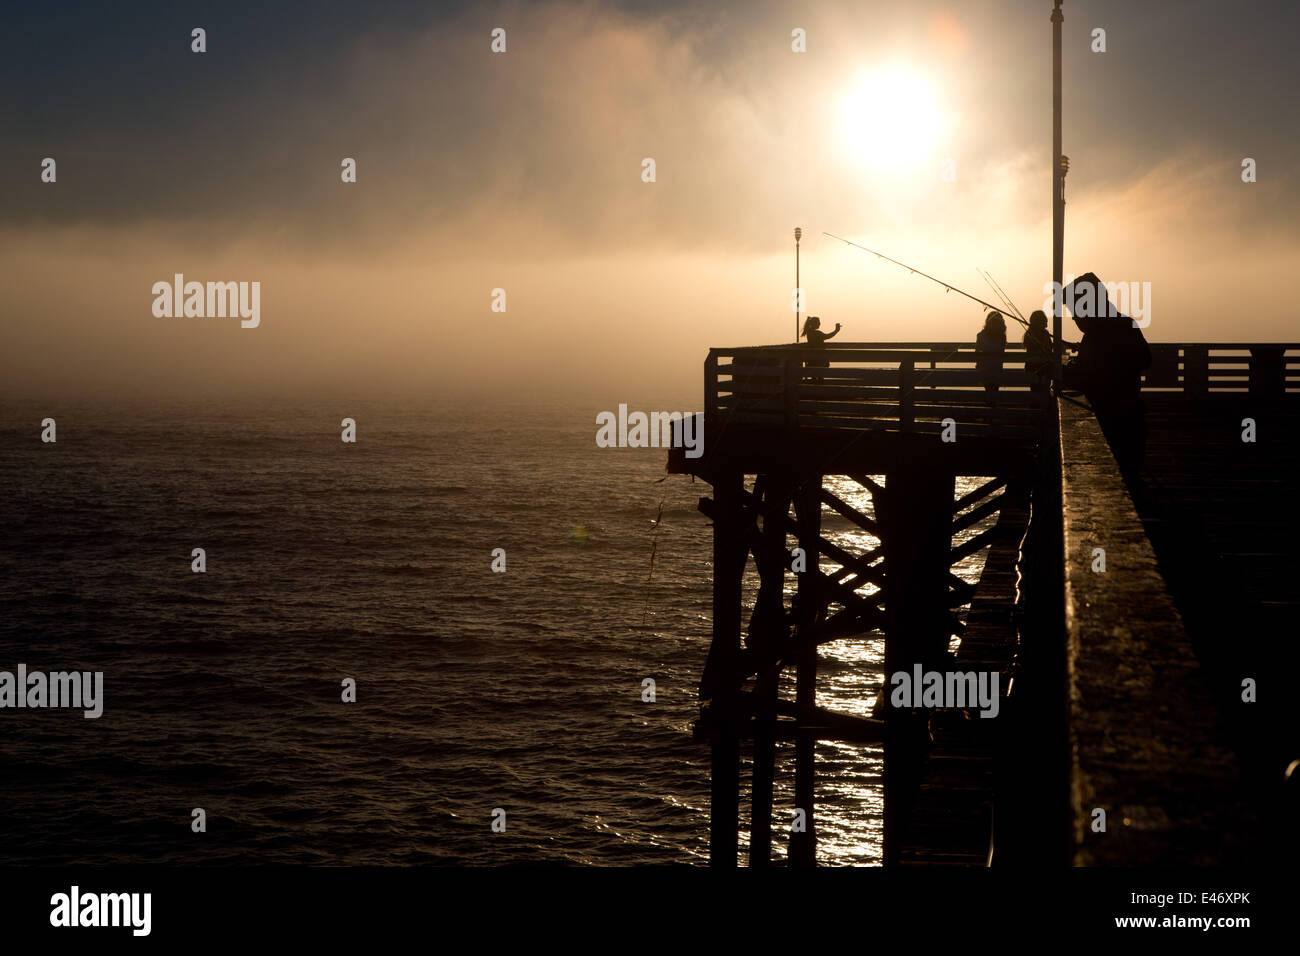 Mann Angeln auf Crystal Pier, eine öffentliche Pier und Hotel, im Februar 2014. Am späten Nachmittag ist die Sonne eine Nebelbank aufschlussreich. Stockfoto